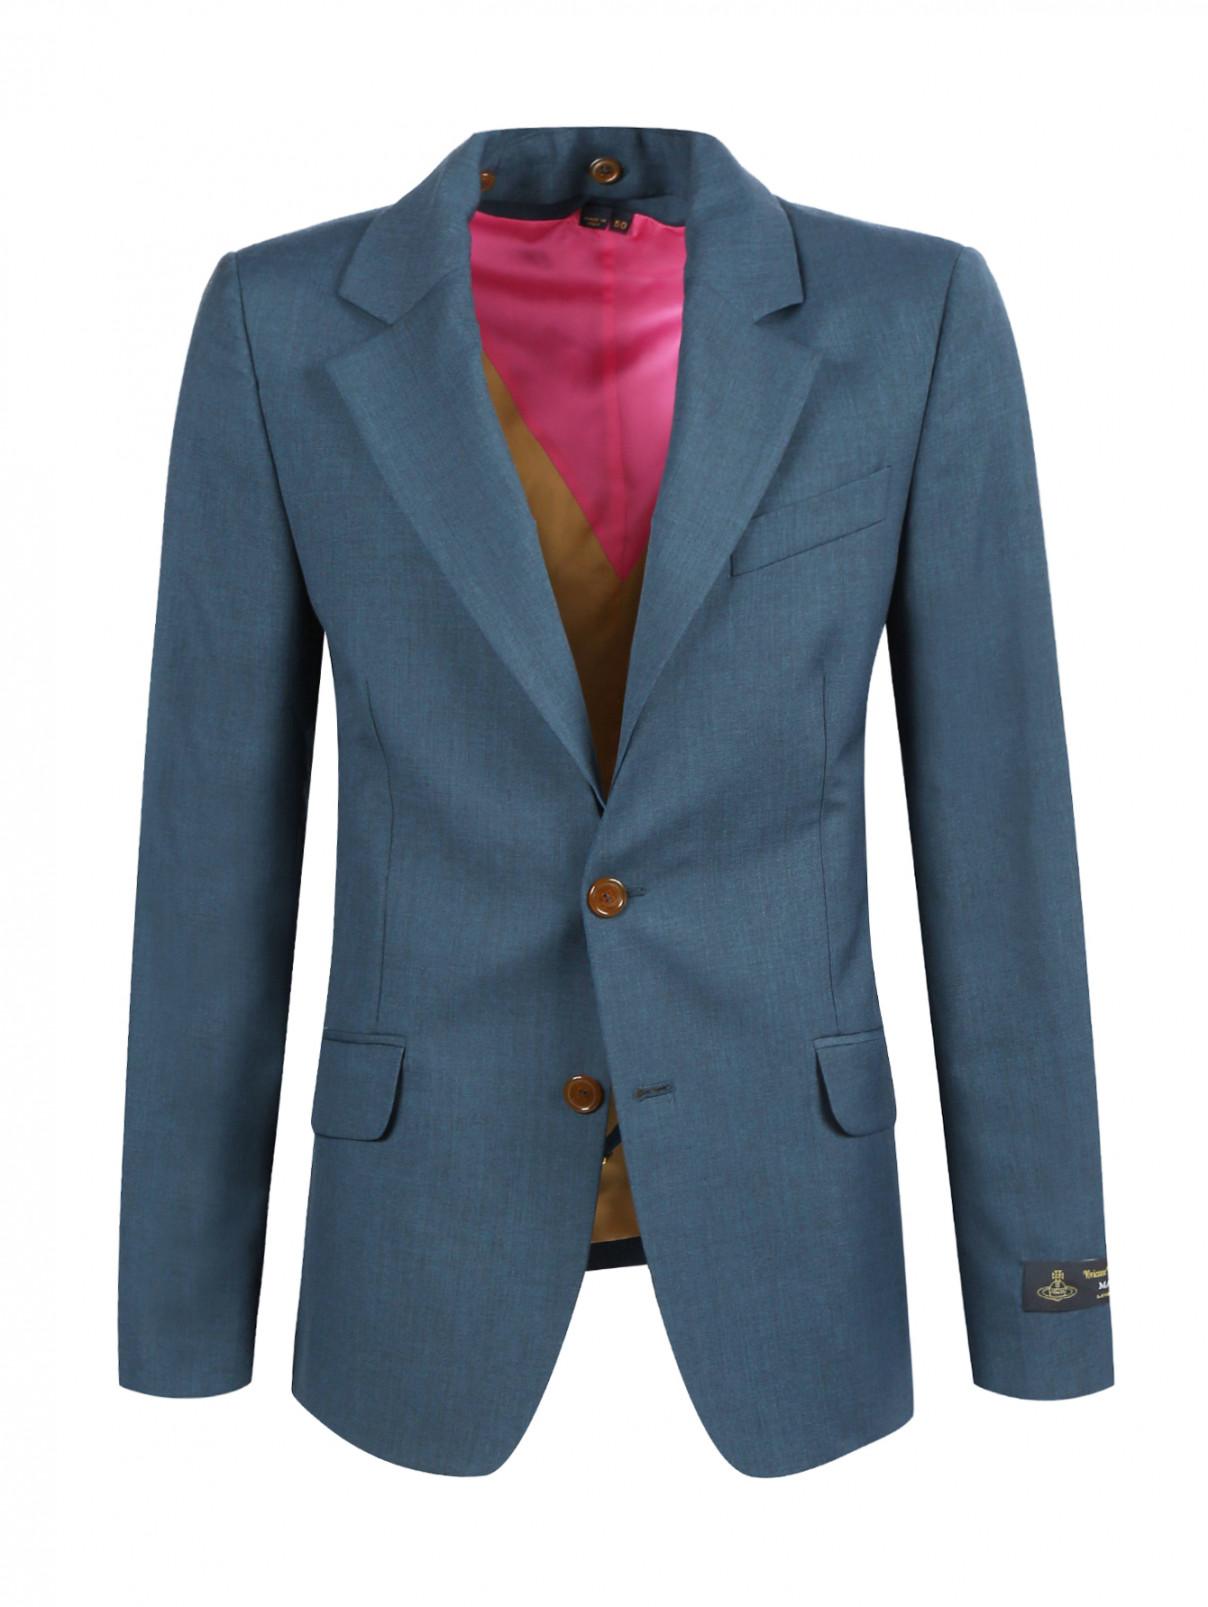 Однобортный пиджак из шерсти со съемными лацканами Vivienne Westwood  –  Общий вид  – Цвет:  Синий